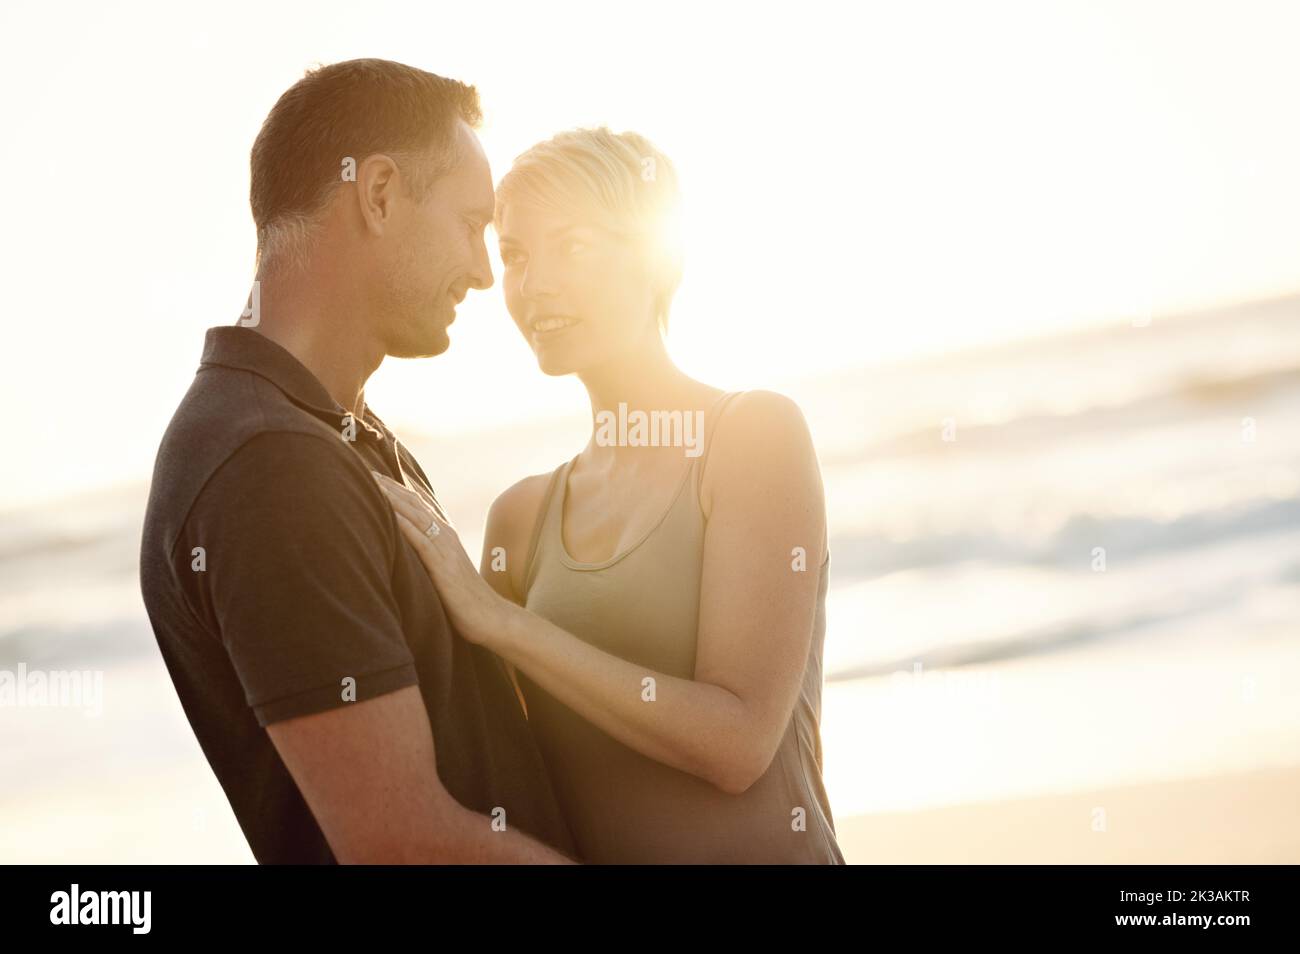 Per sempre e sempre innamorati. Una coppia matura che si gode una giornata in spiaggia. Foto Stock